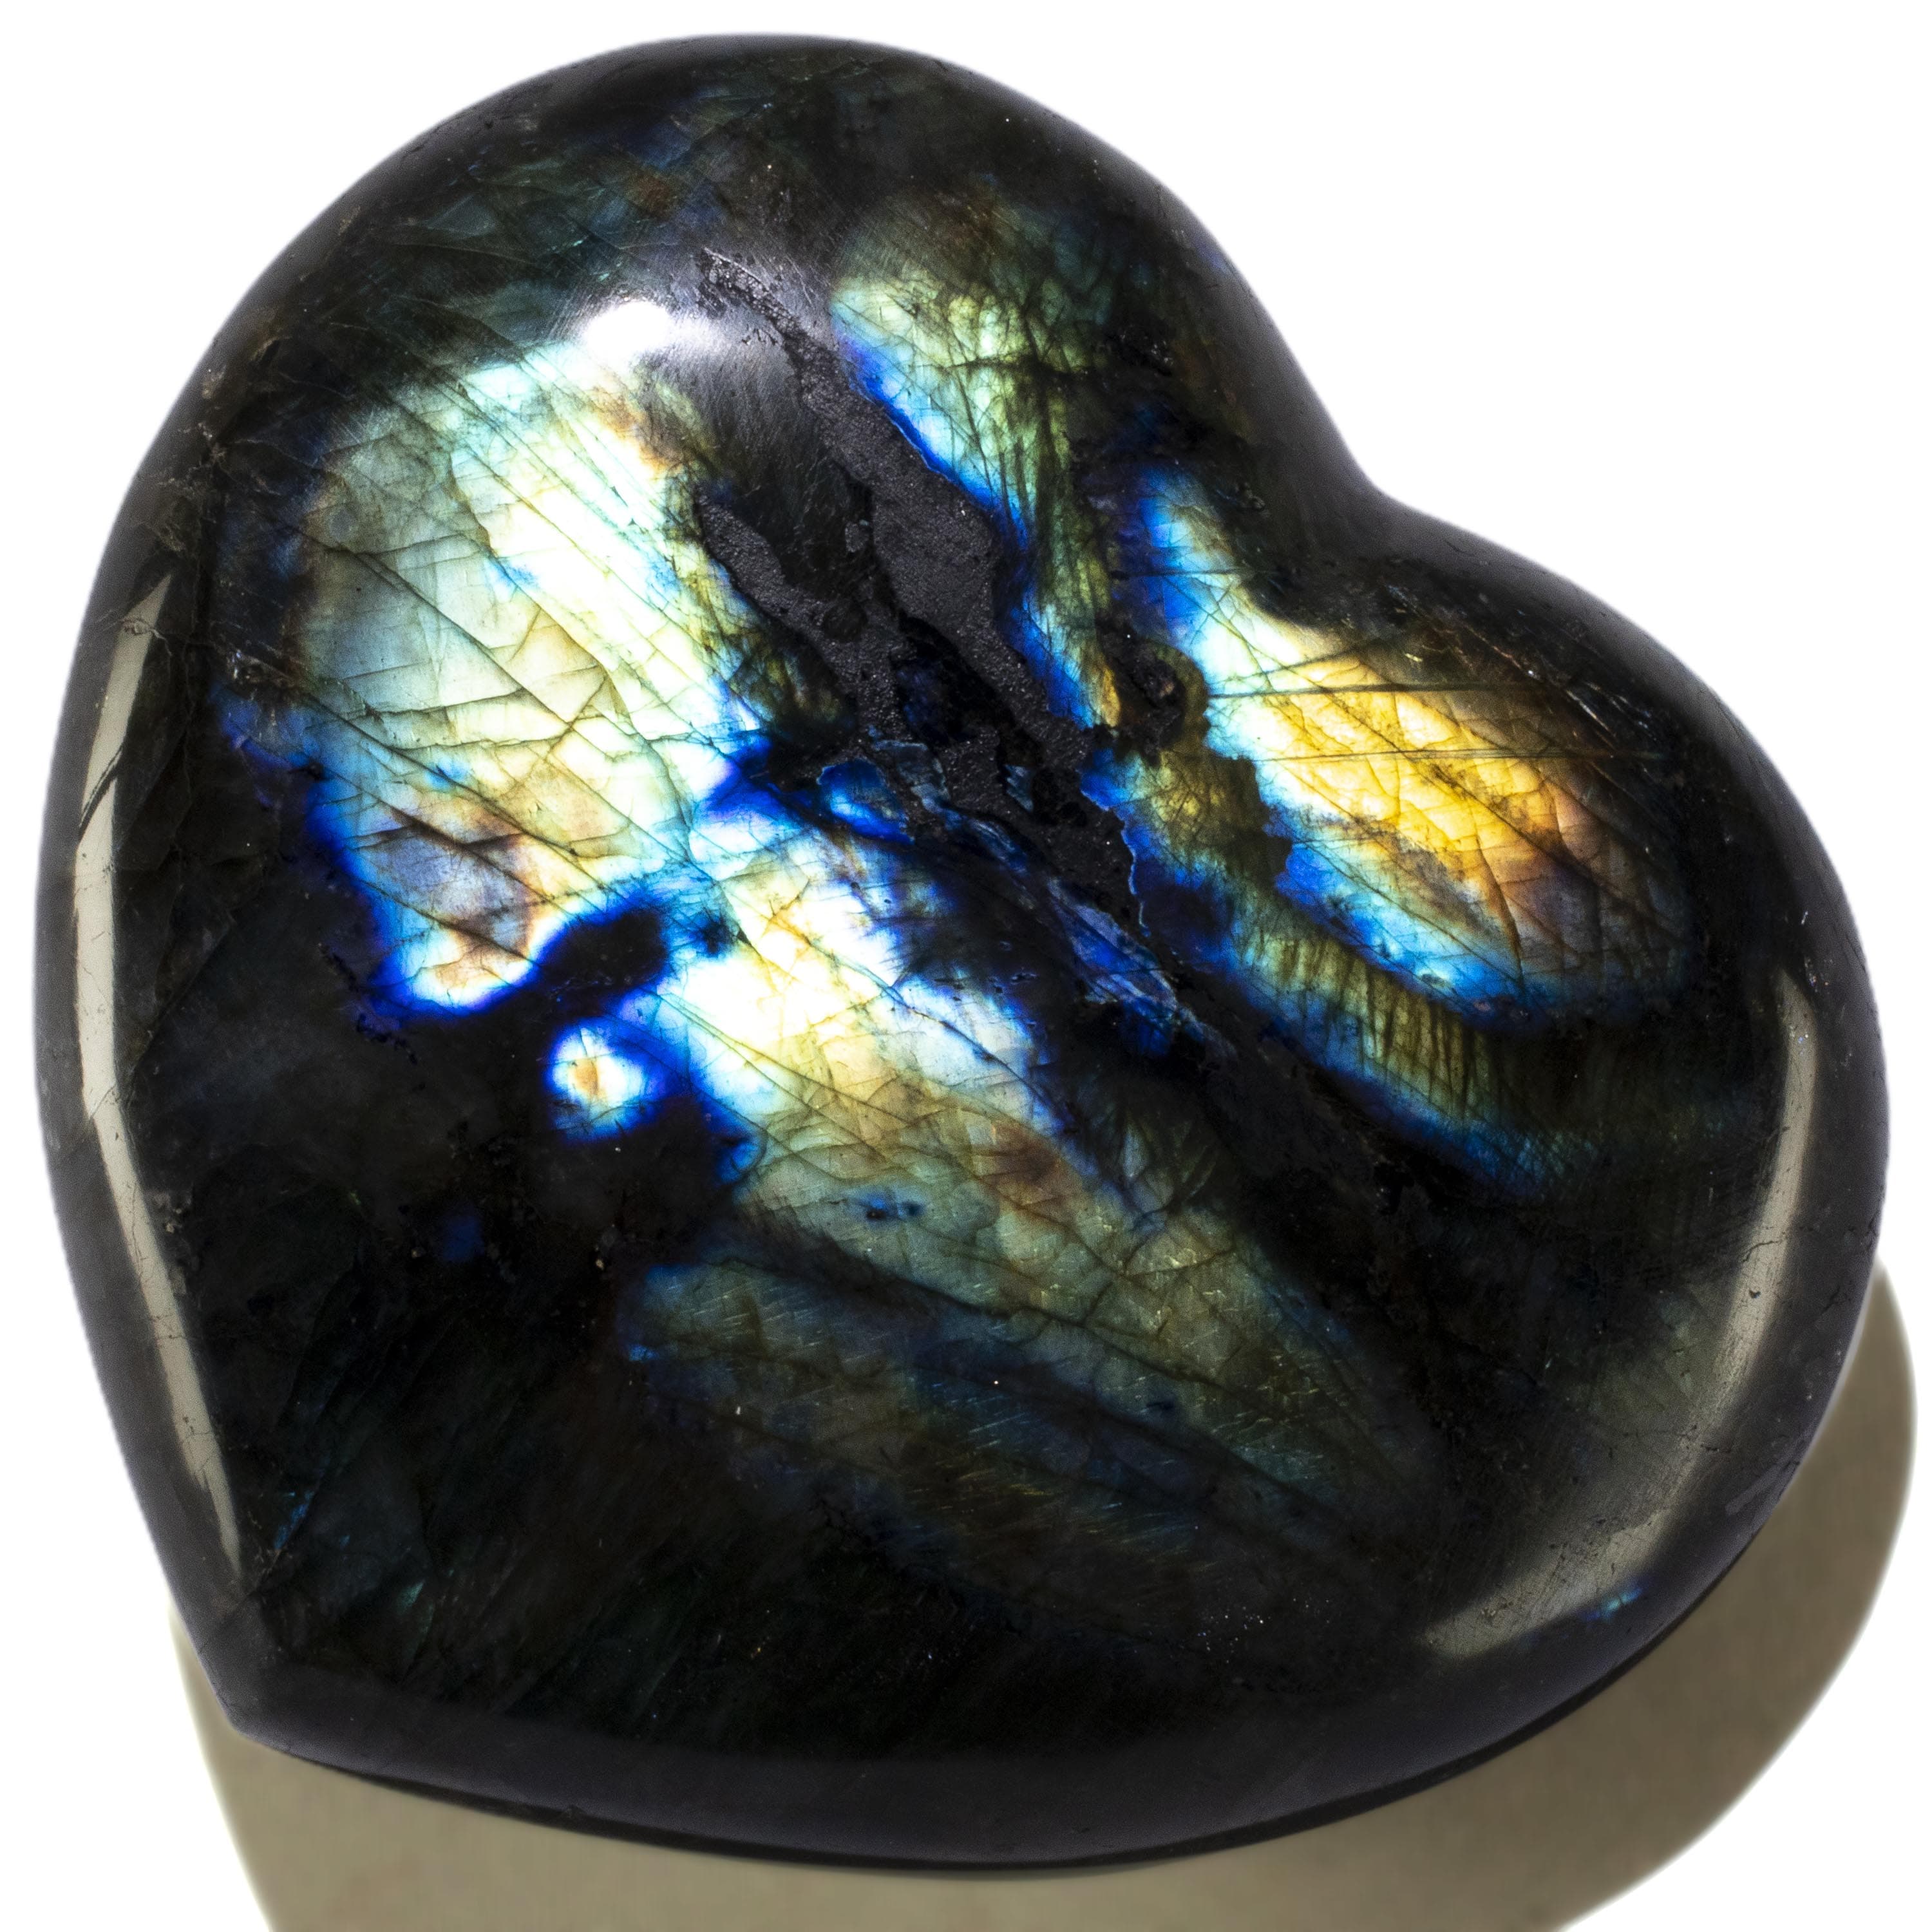 KALIFANO Labradorite Labradorite Gemstone Heart Carving 560g / 4.5in. GH500-LB